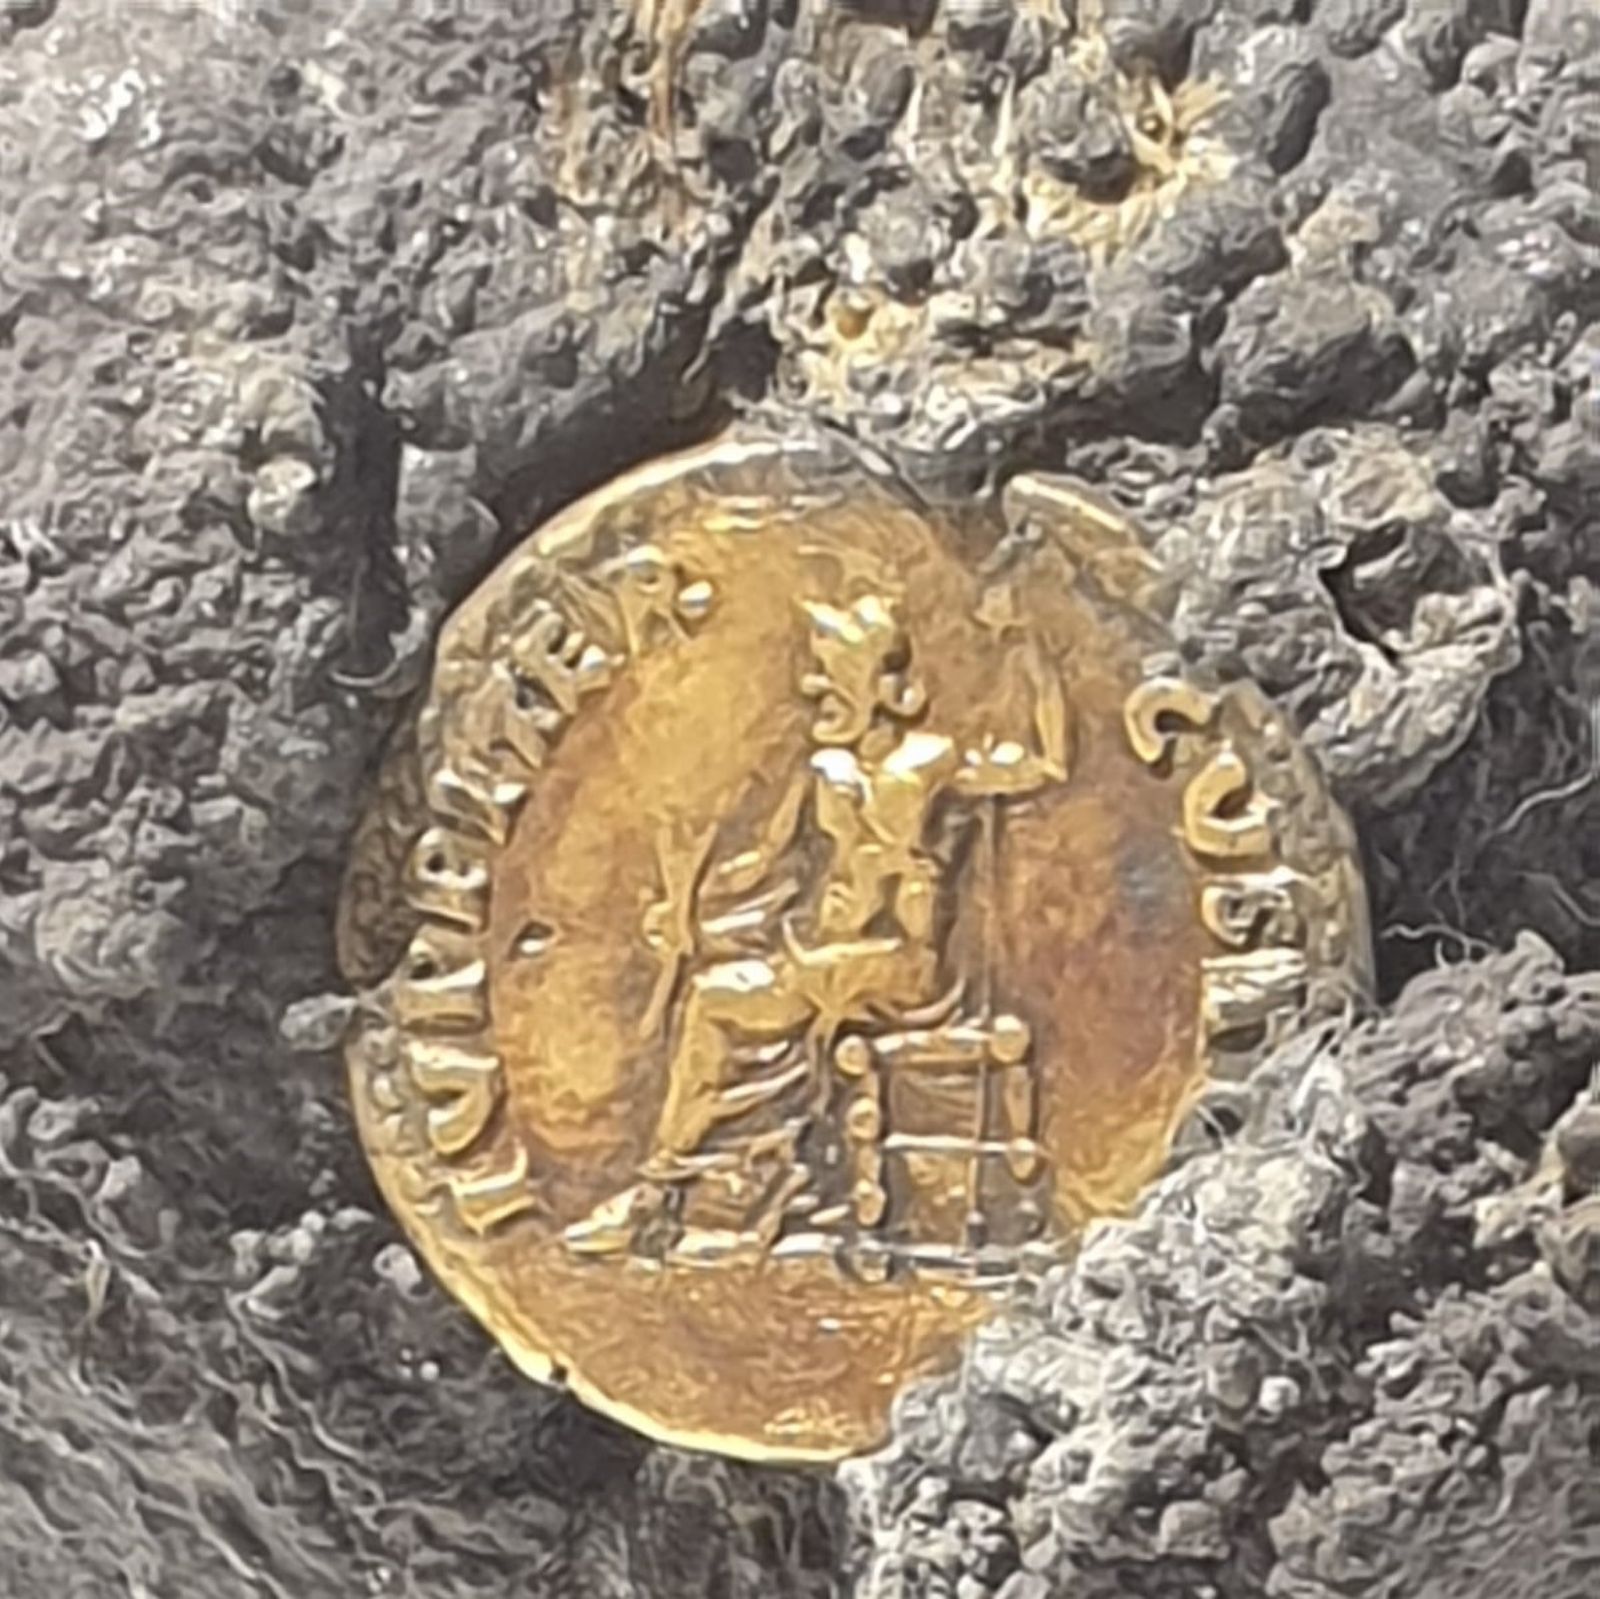 Romeinse munt in Herculaneum